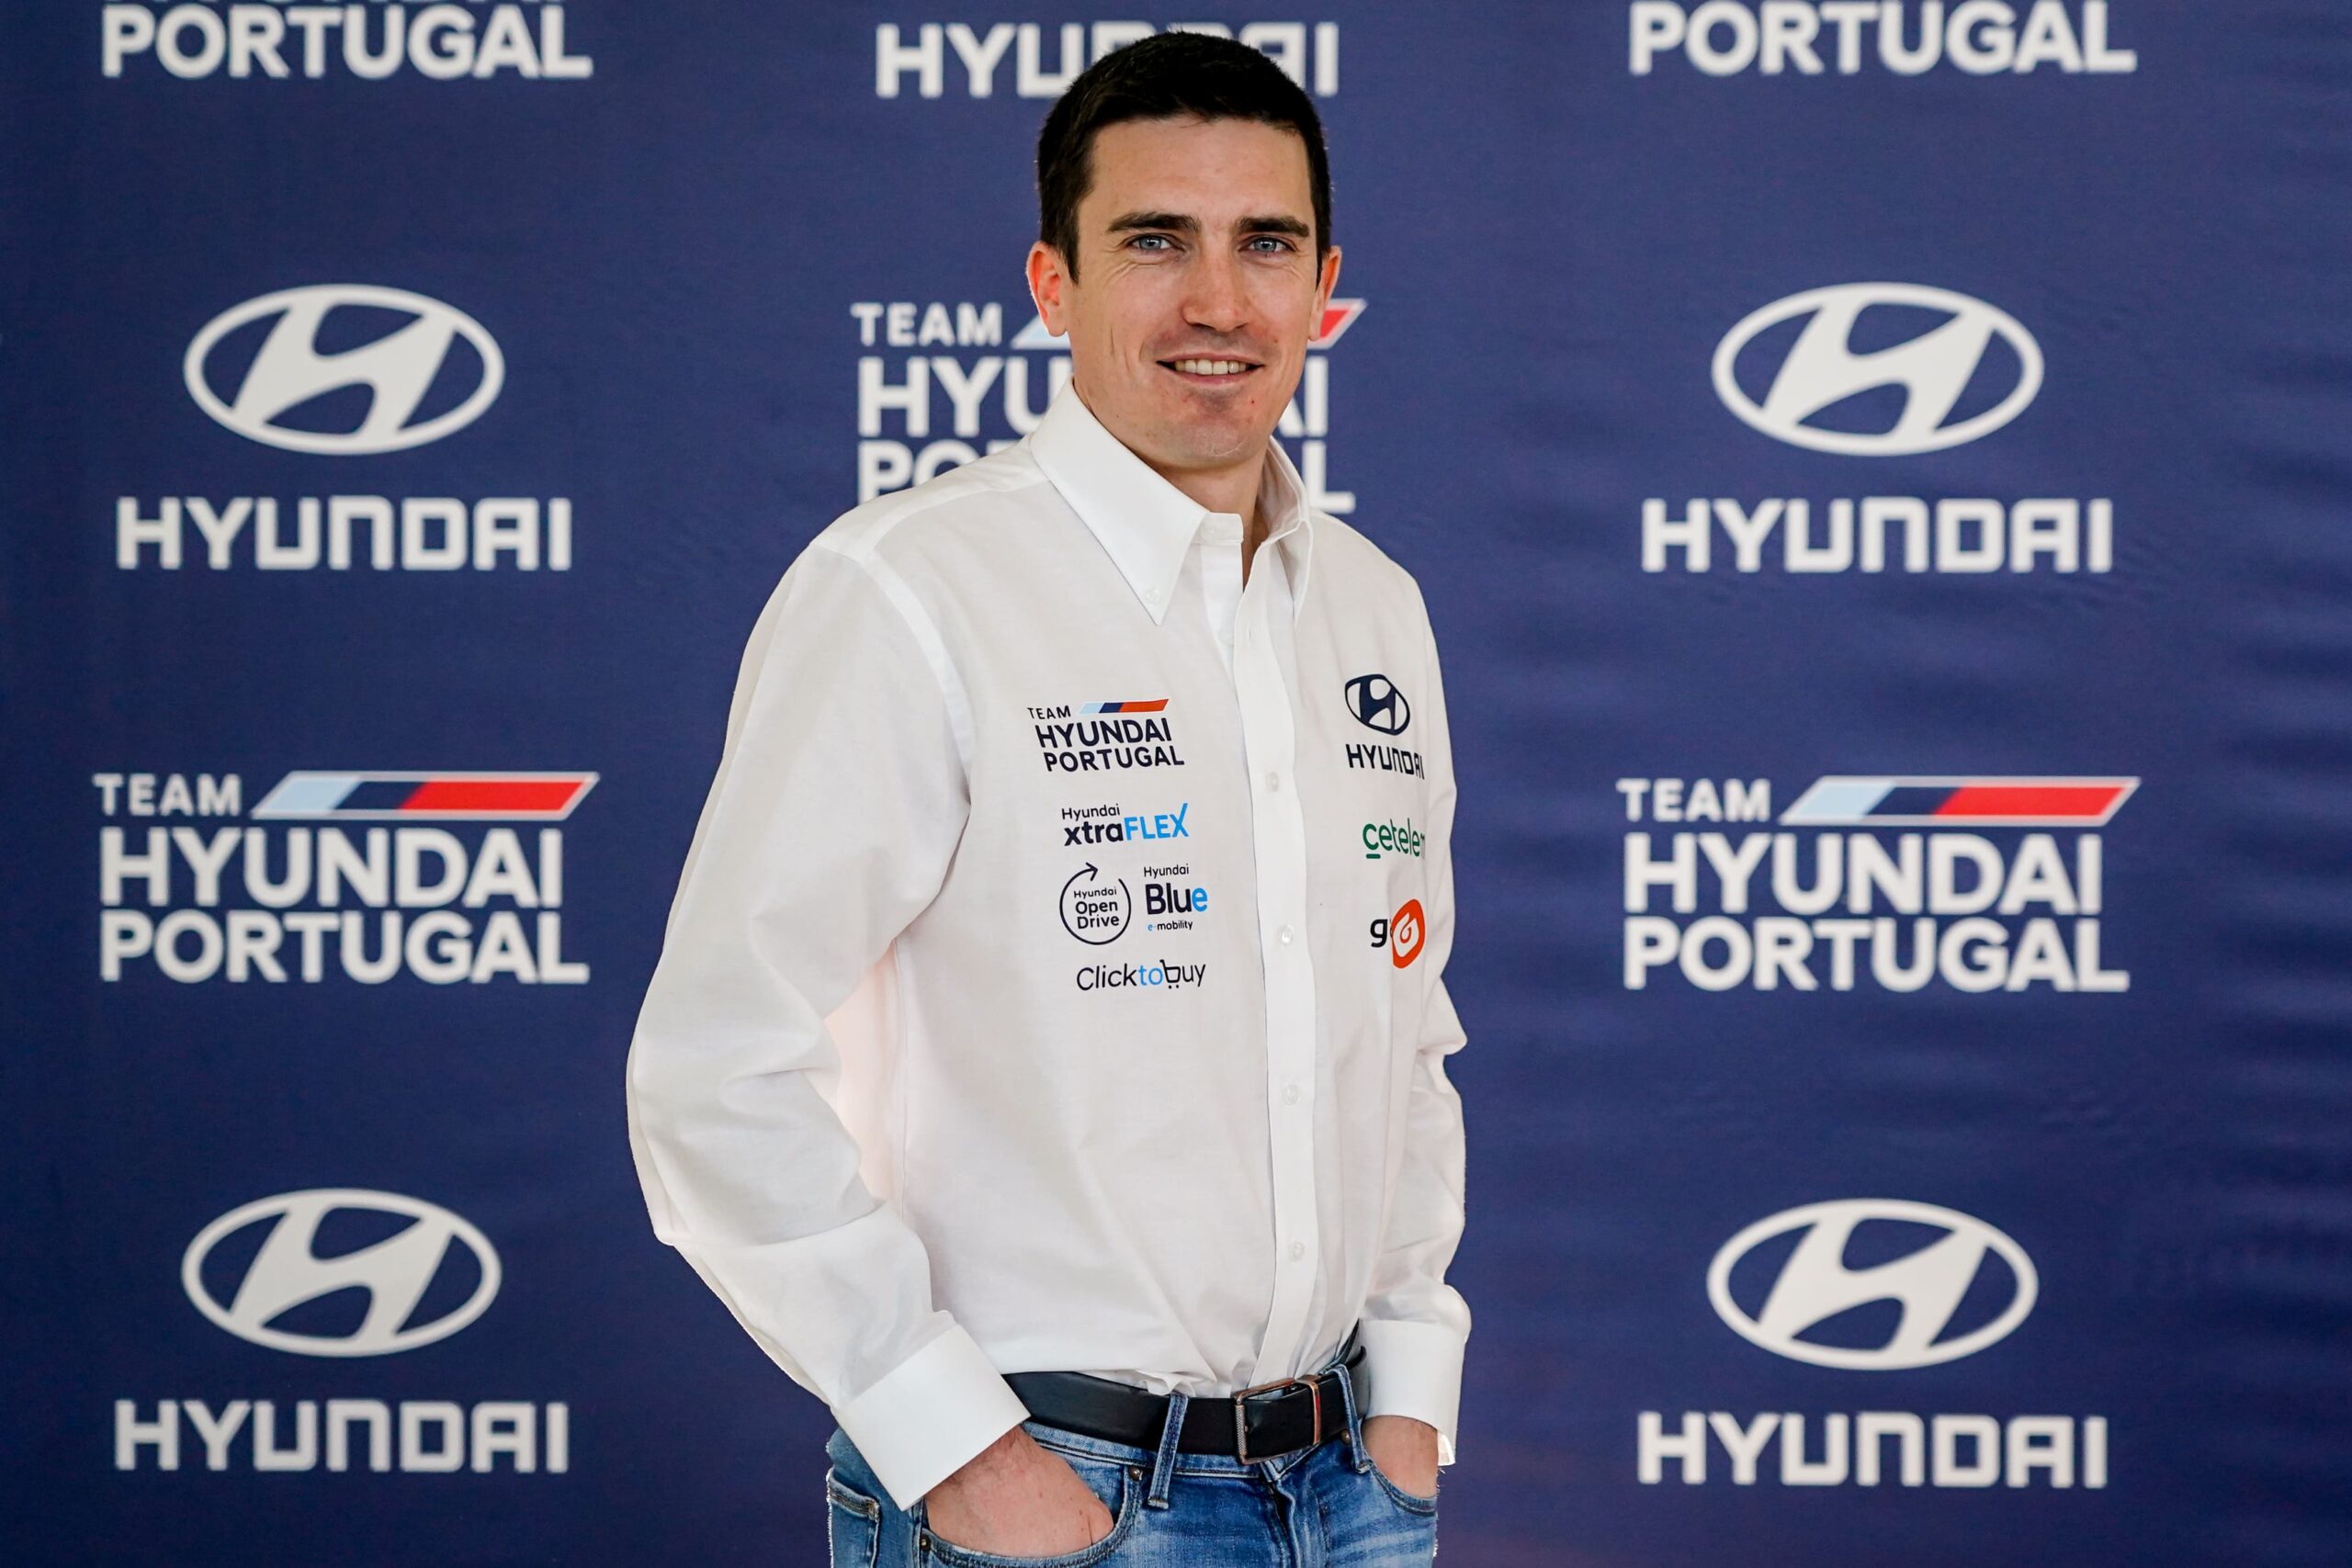 Team Hyundai Portugal traz piloto do WRC para o CPR (4)